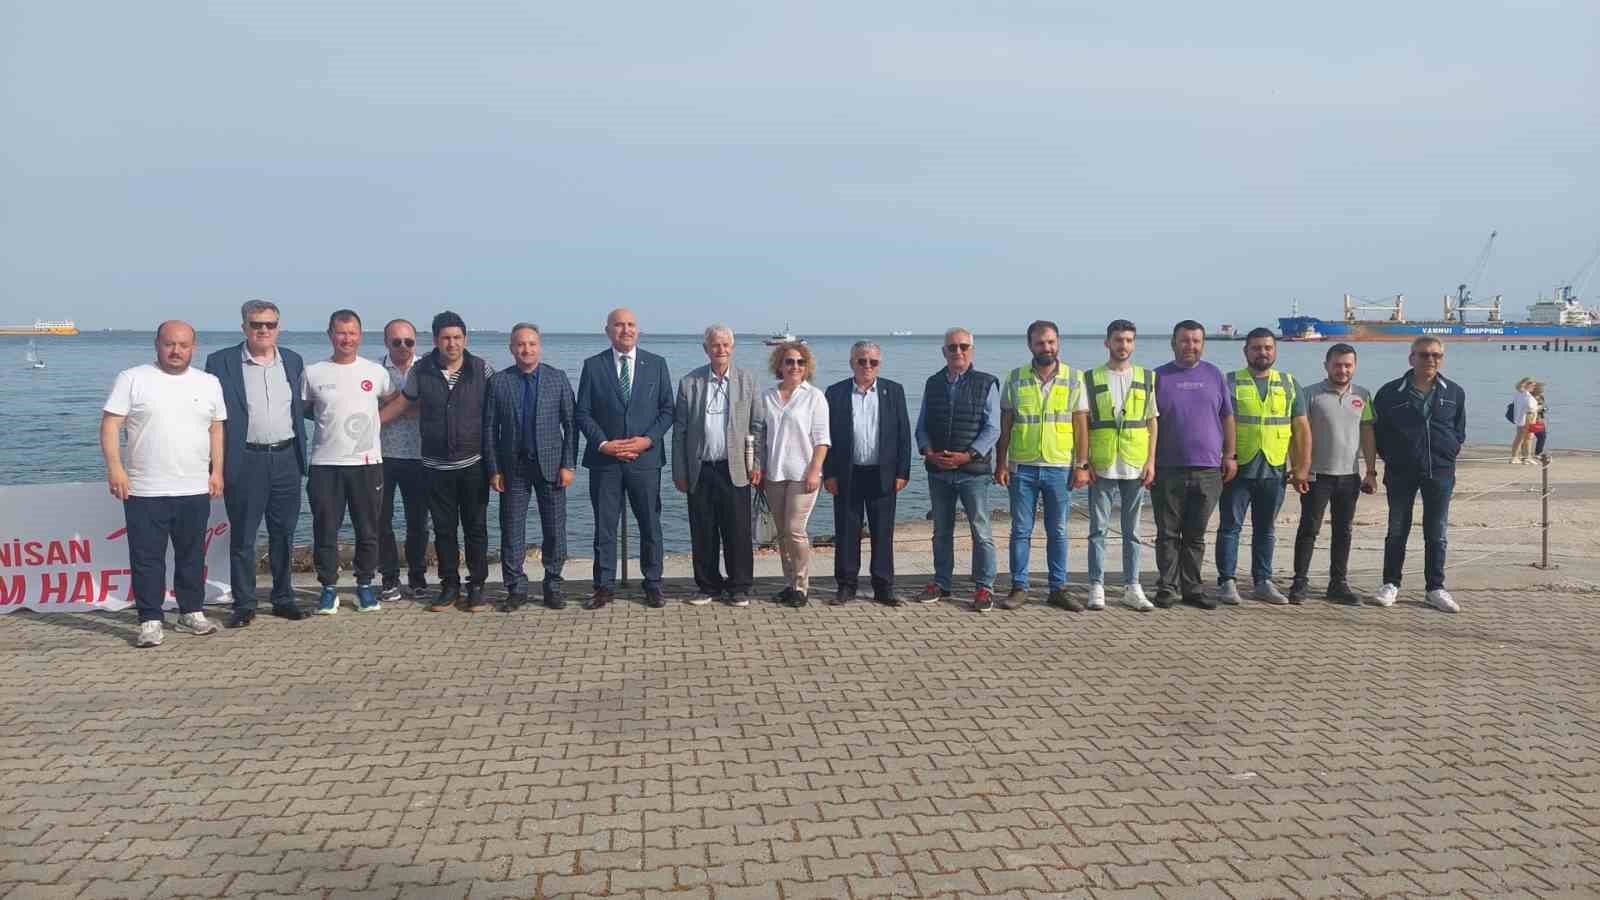 Turizm Haftası Marmara Denizi’ne taşındı: Yelkenciler ve römorkörlerden özel gösteri
